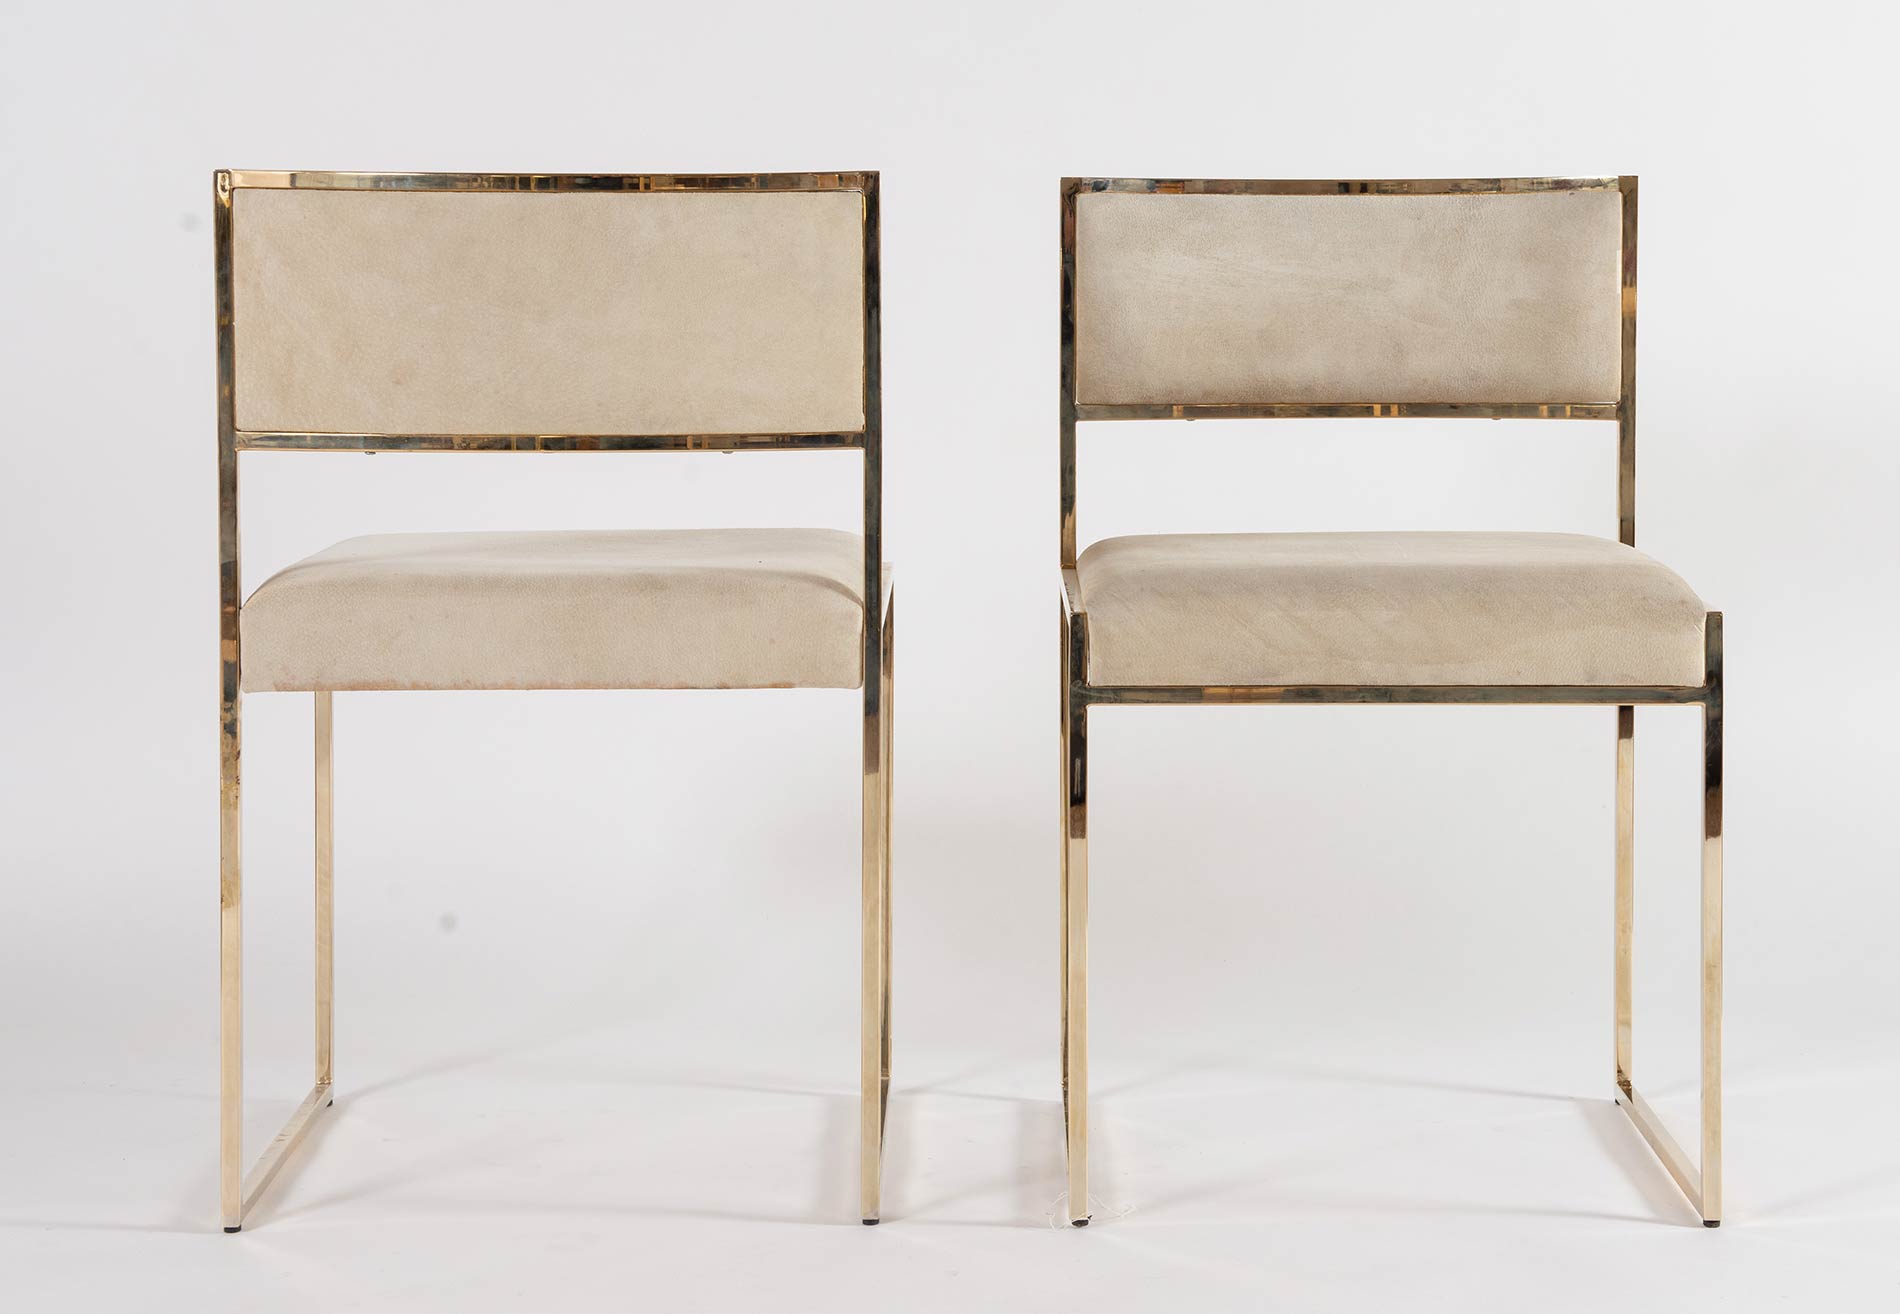 Romeo Rega, Due sedie con struttura in ottone, Anni ‘70. - Image 3 of 3